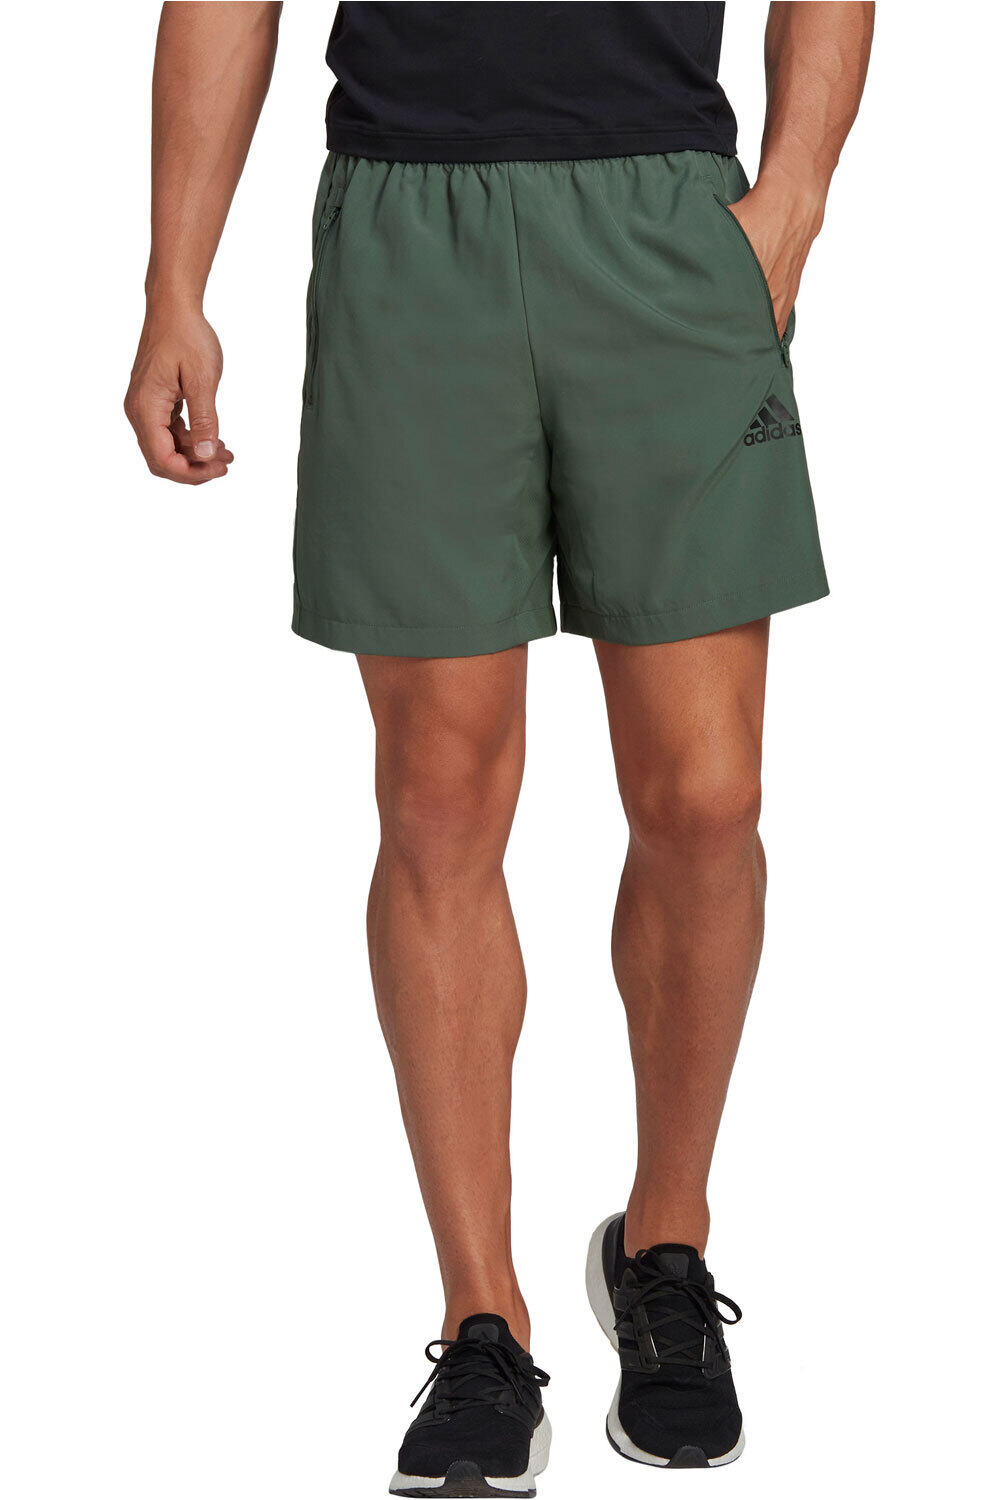 adidas pantalón corto fitness hombre AEROREADY Designed 2 Move Woven Sport vista frontal